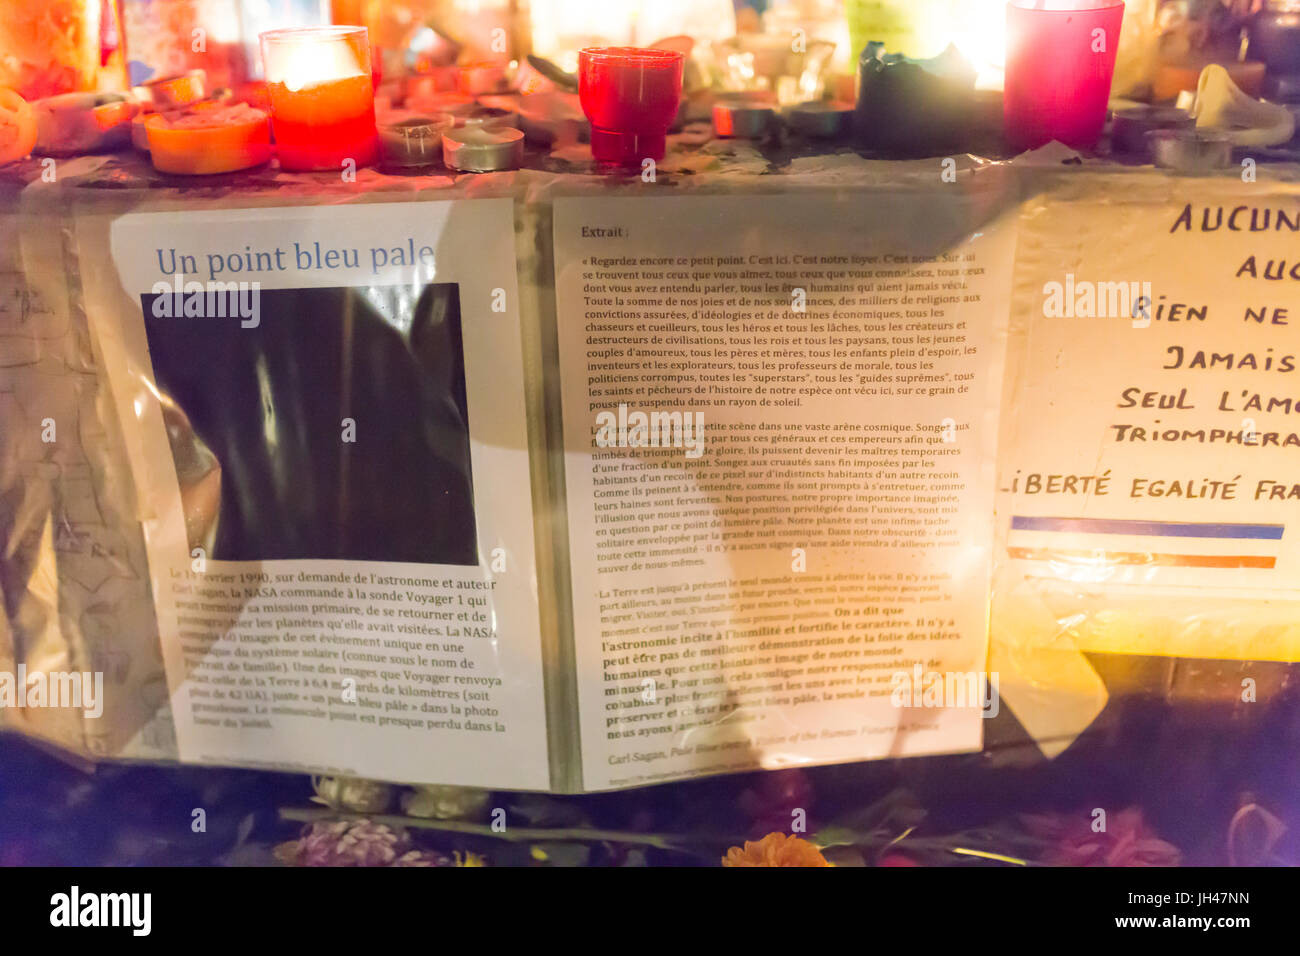 Das Buch Hellblau schwärmerisch, Carl Sagan in Paris. Spontane Hommage an die Opfer der Terroranschläge in Paris, den 13. November 2015. Stockfoto